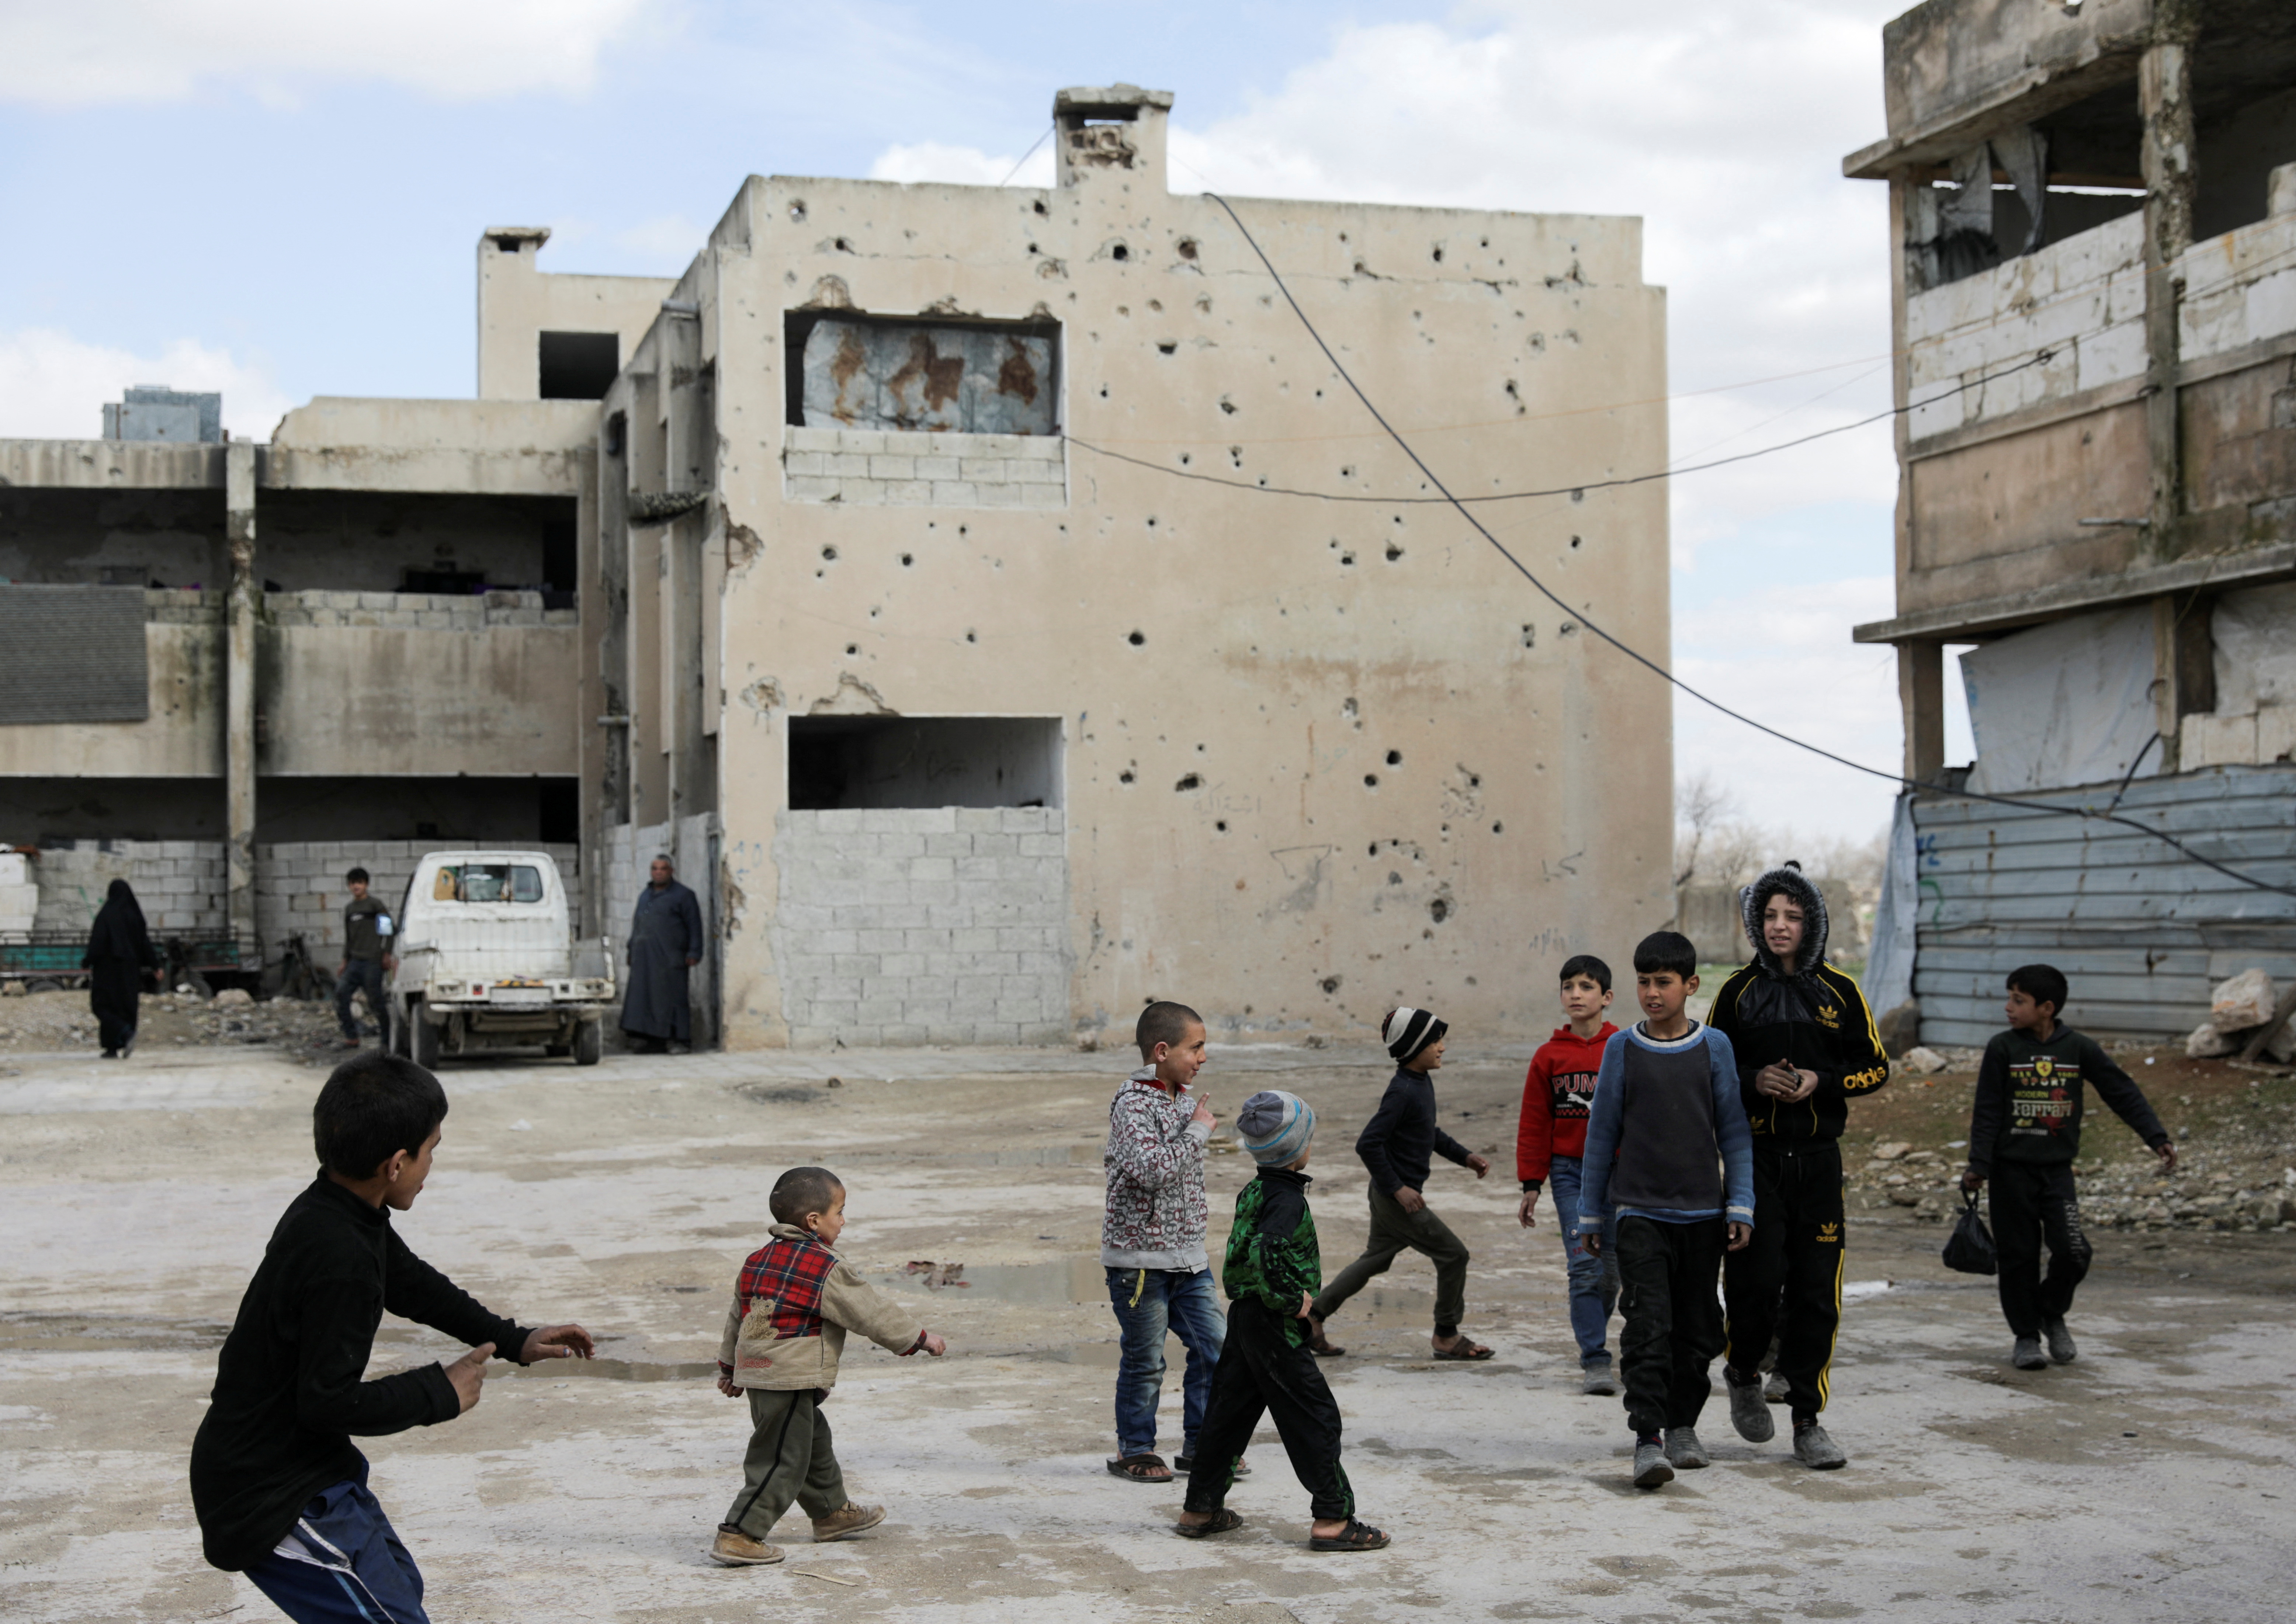 Unos niños juegan cerca de edificios dañados en la ciudad de Tadef, controlada por los rebeldes, en una línea de frente entre las fuerzas gubernamentales sirias respaldadas por Rusia y el territorio rebelde sirio respaldado por Turquía, en el norte de Siria el 4 de marzo de 2022. Foto tomada el 4 de marzo de 2022. REUTERS/Khalil Ashawi